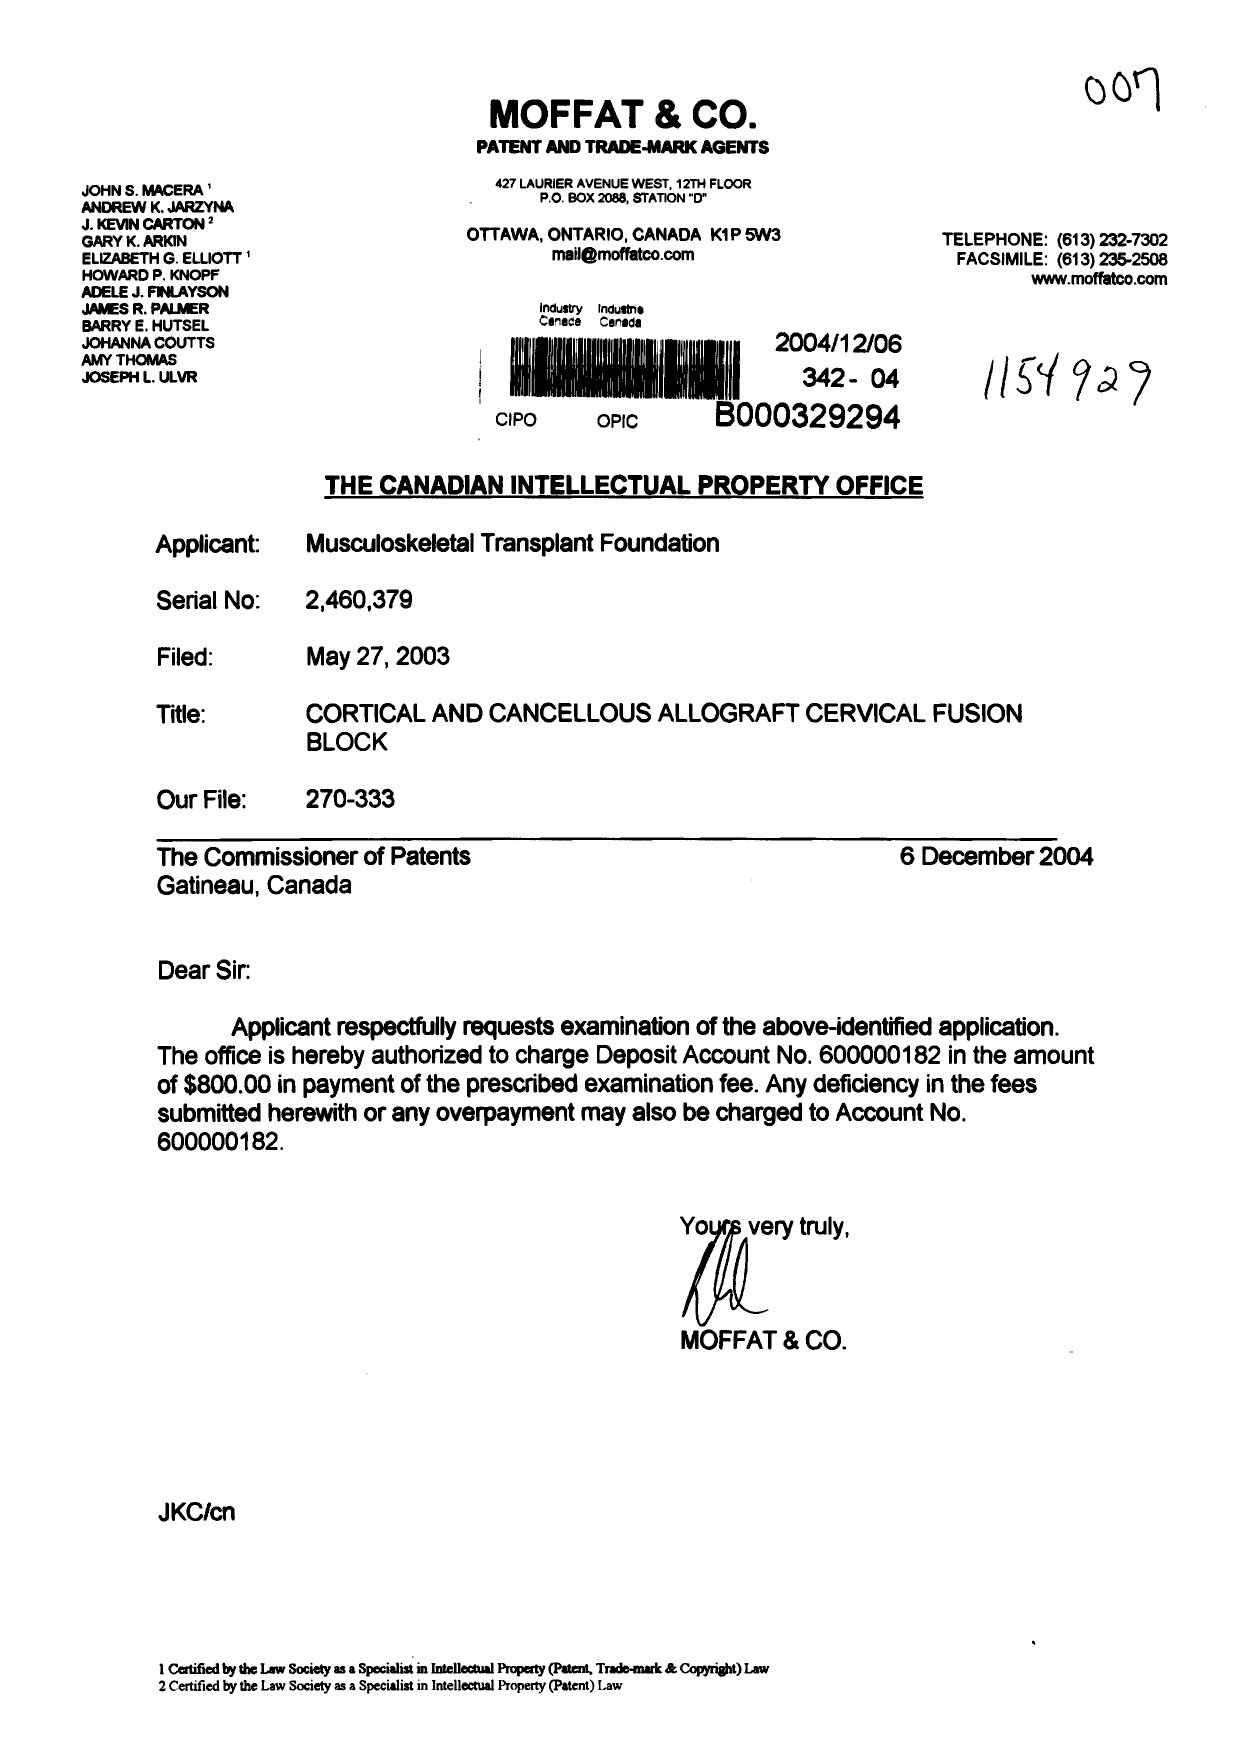 Document de brevet canadien 2460379. Poursuite-Amendment 20041206. Image 1 de 1